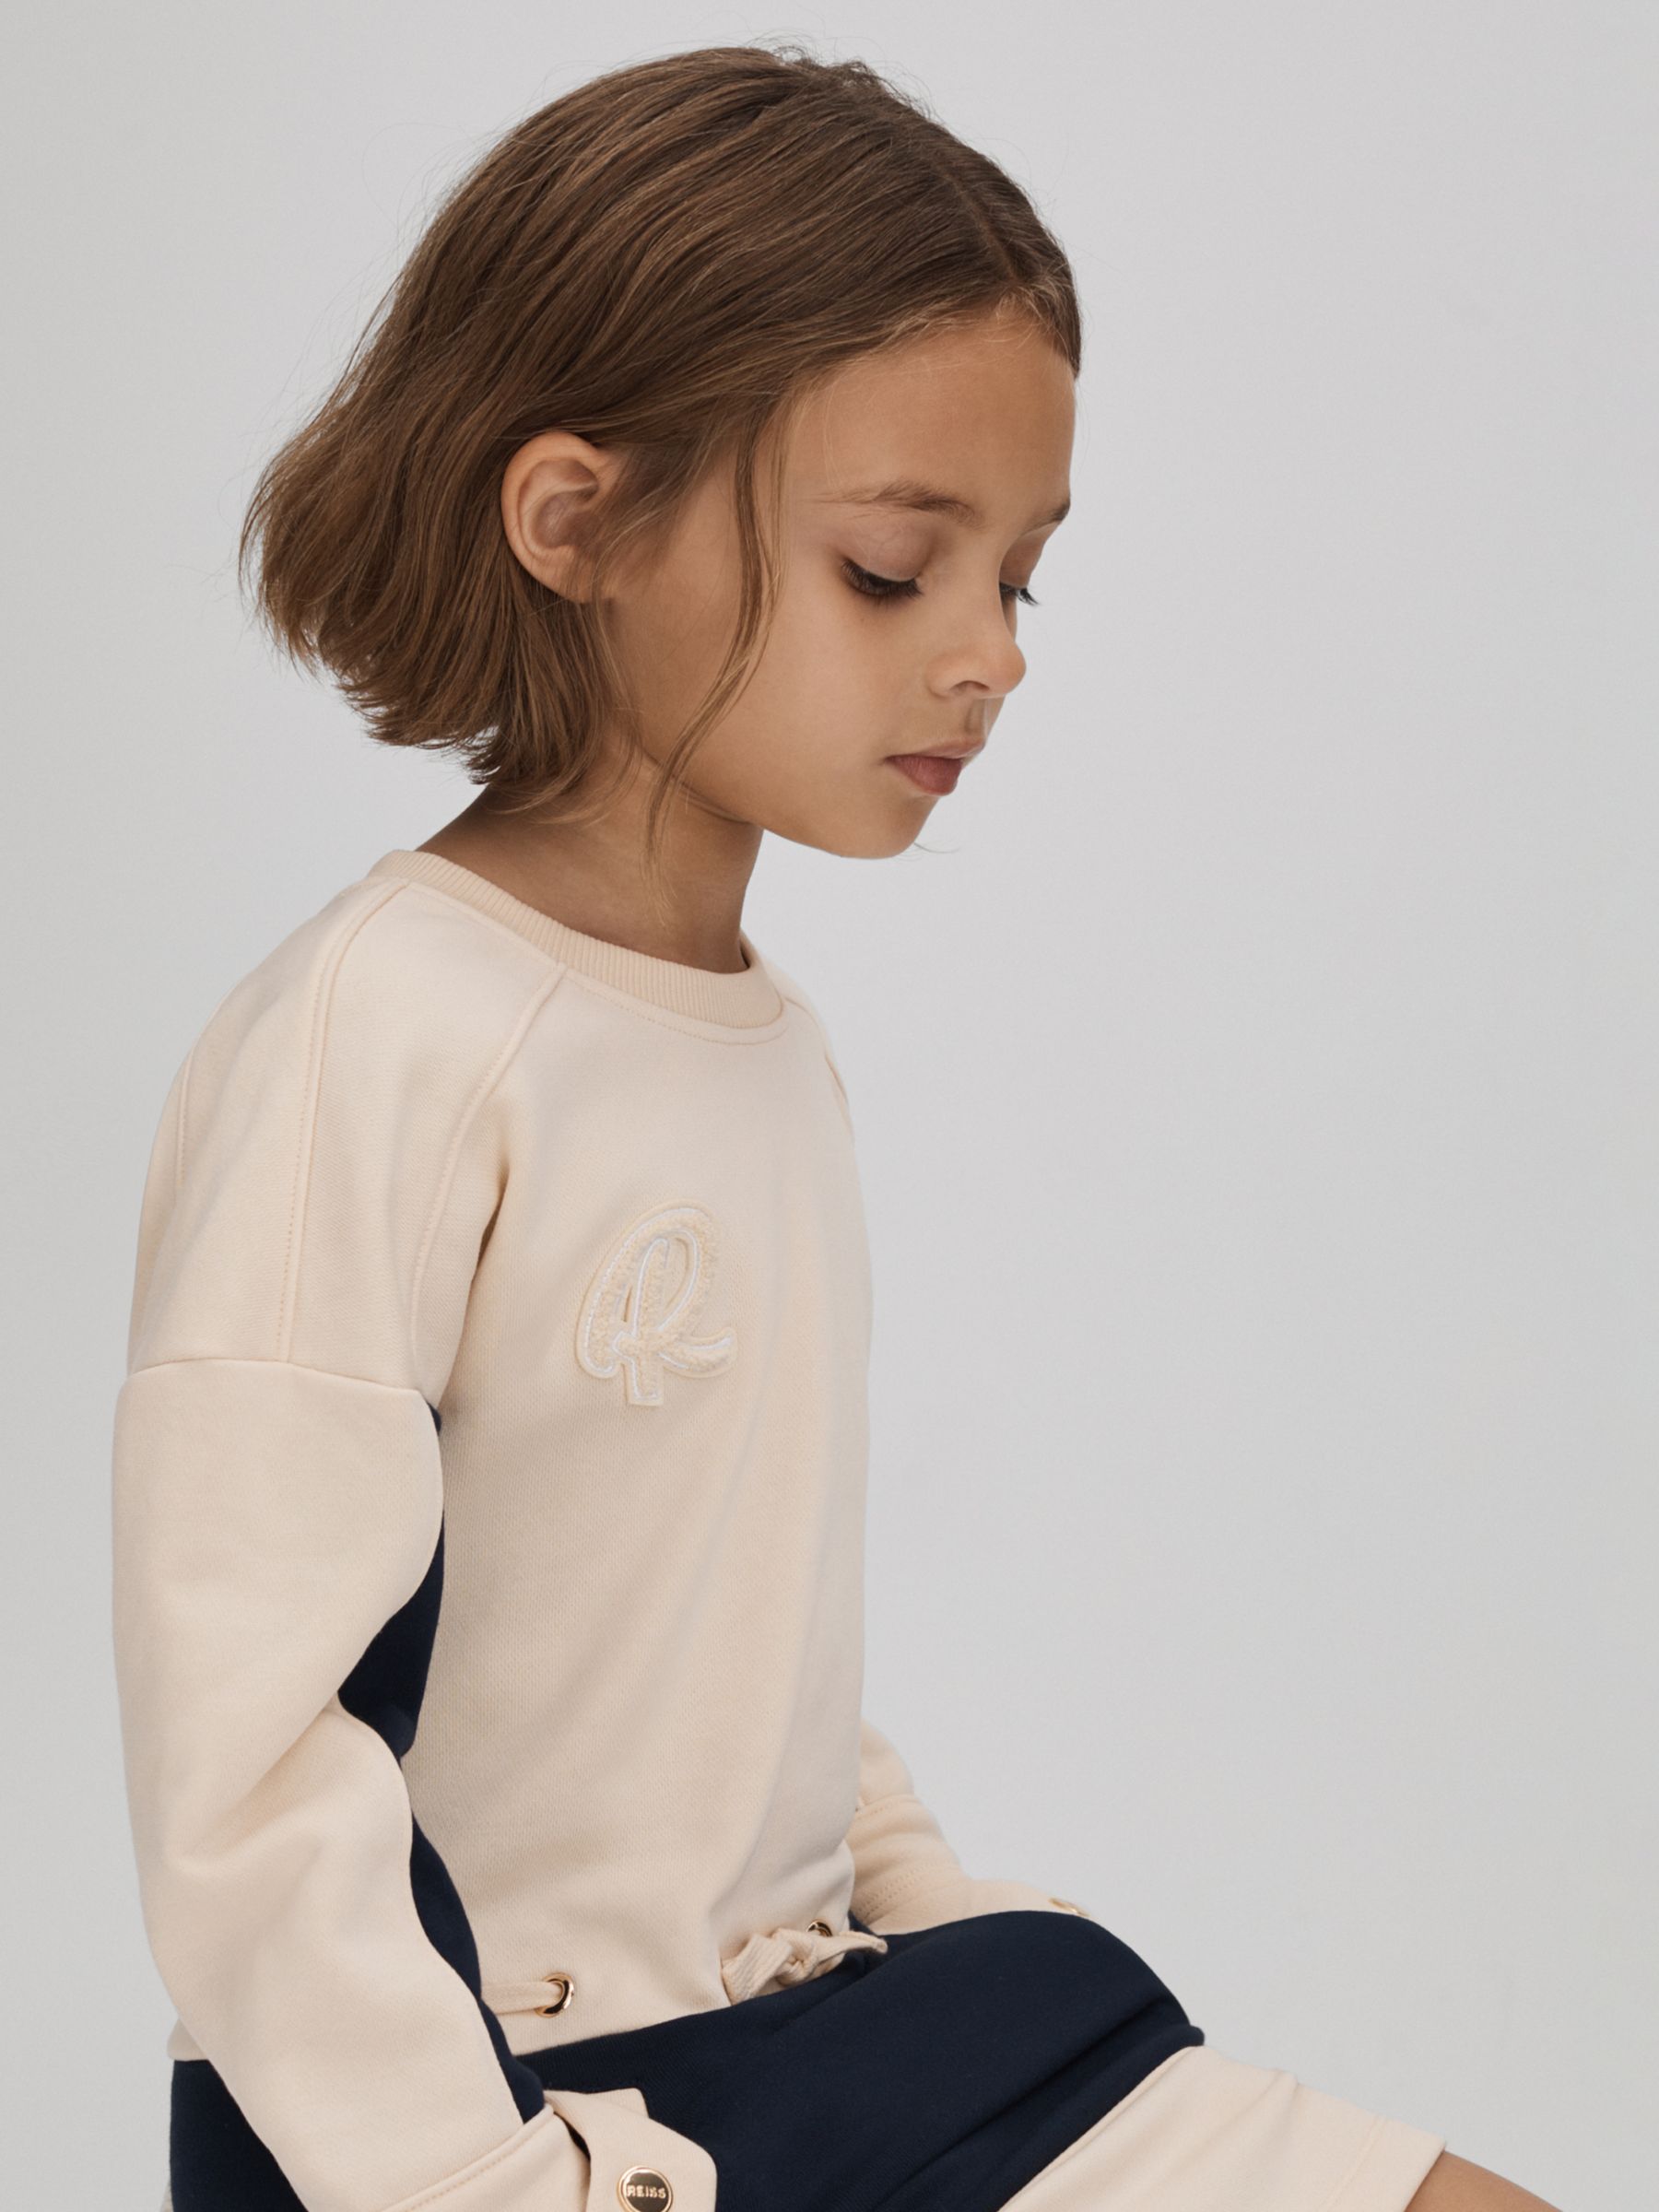 Reiss Kids' Elsa Logo Jersey Sweatshirt Dress, Ivory/Multi, 4-5 years